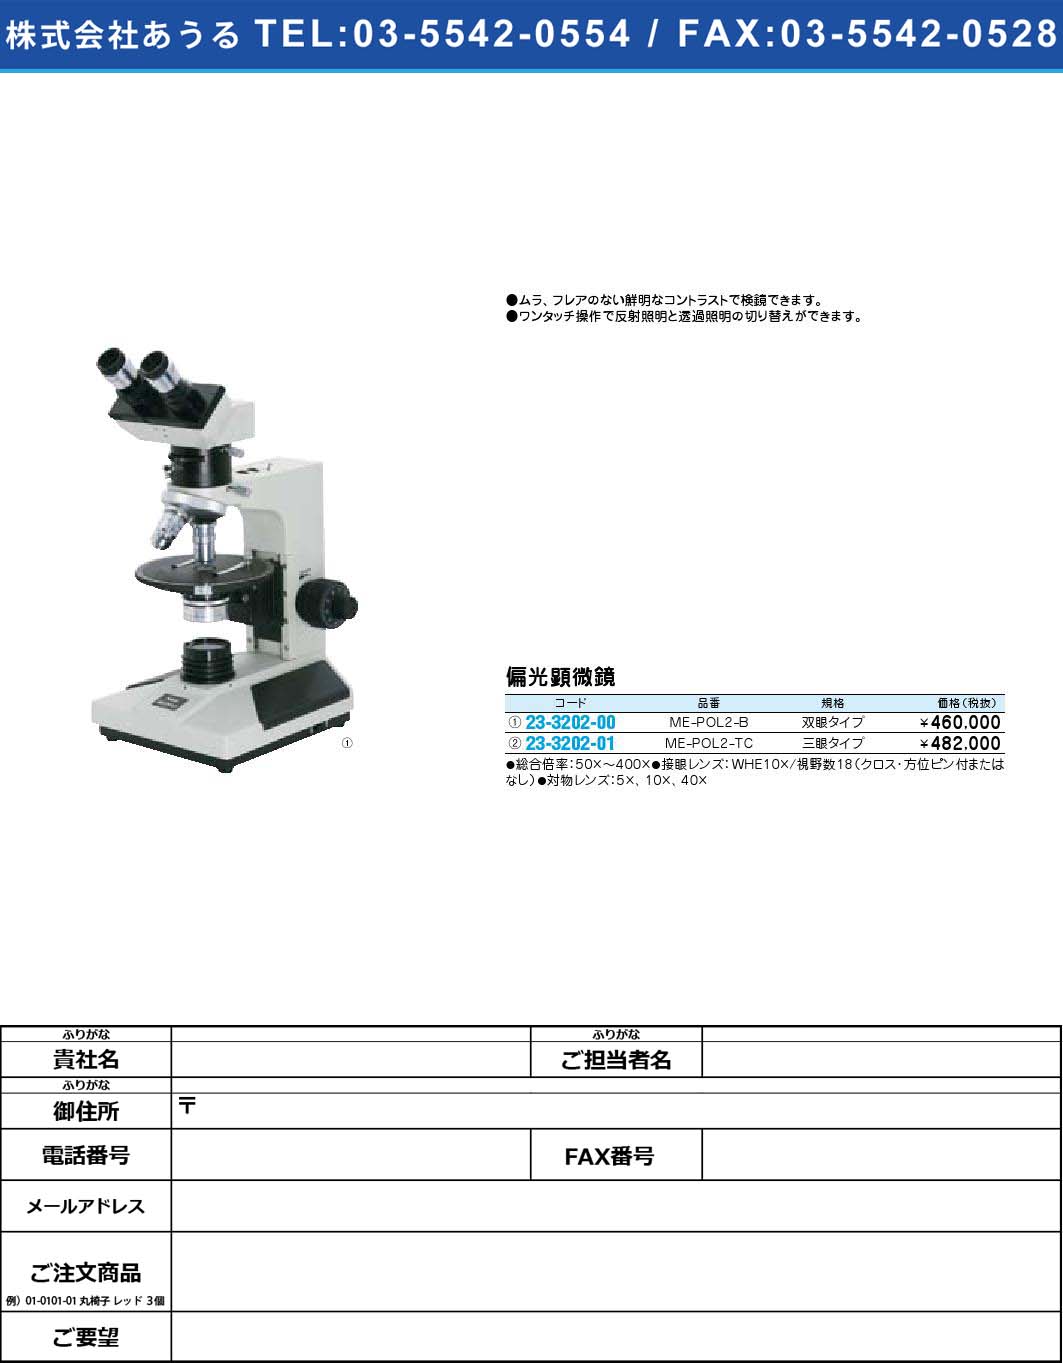 偏光顕微鏡 ME-POL2-TC(23-3202-01)